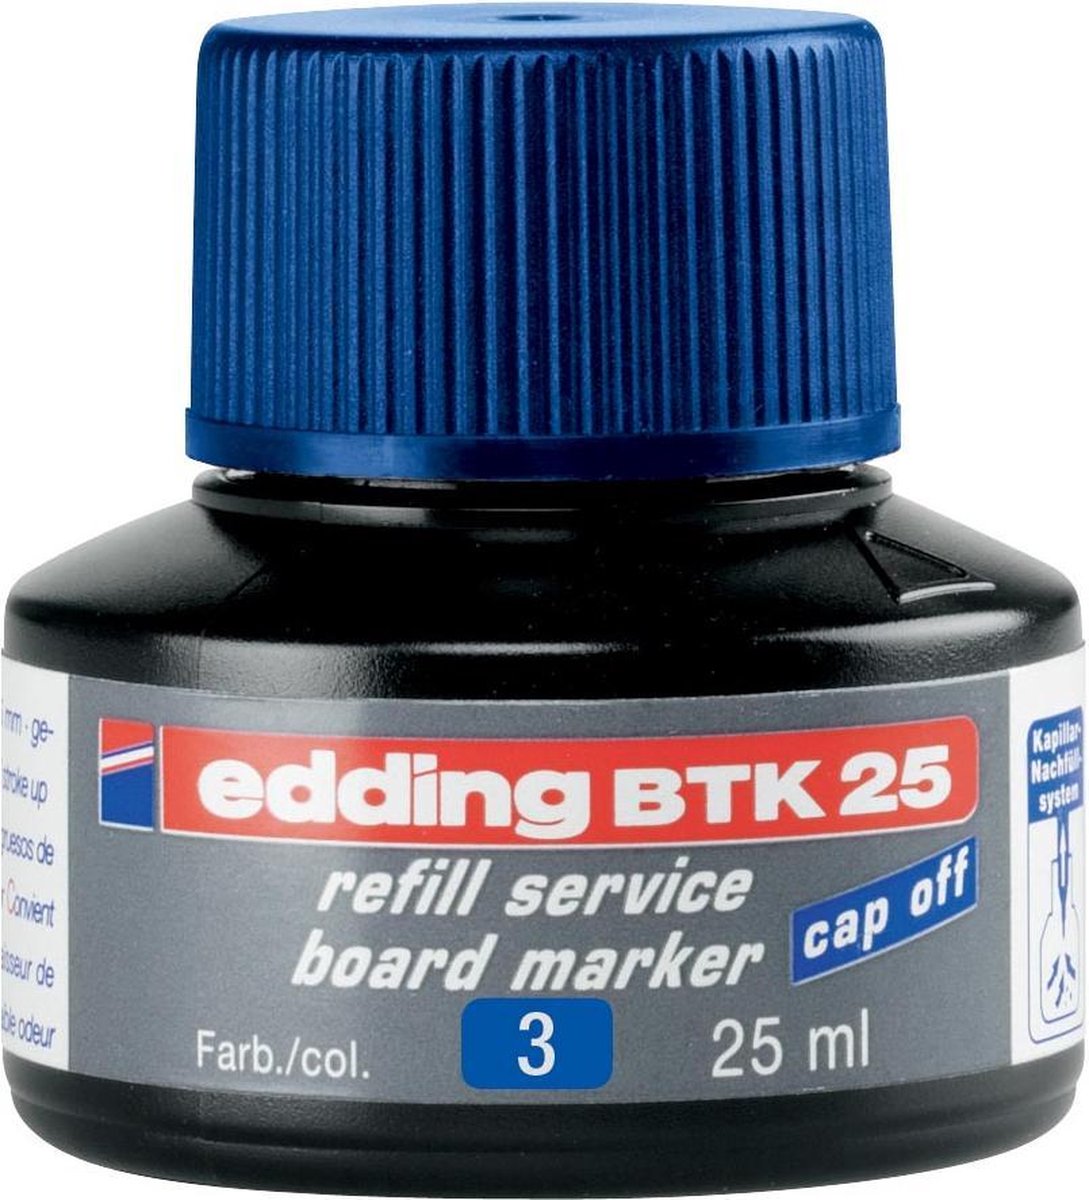 edding BTK 25 (25 ml) navulinkt voor boardmarkers edding 28/29/250/360/361/363 - blauw